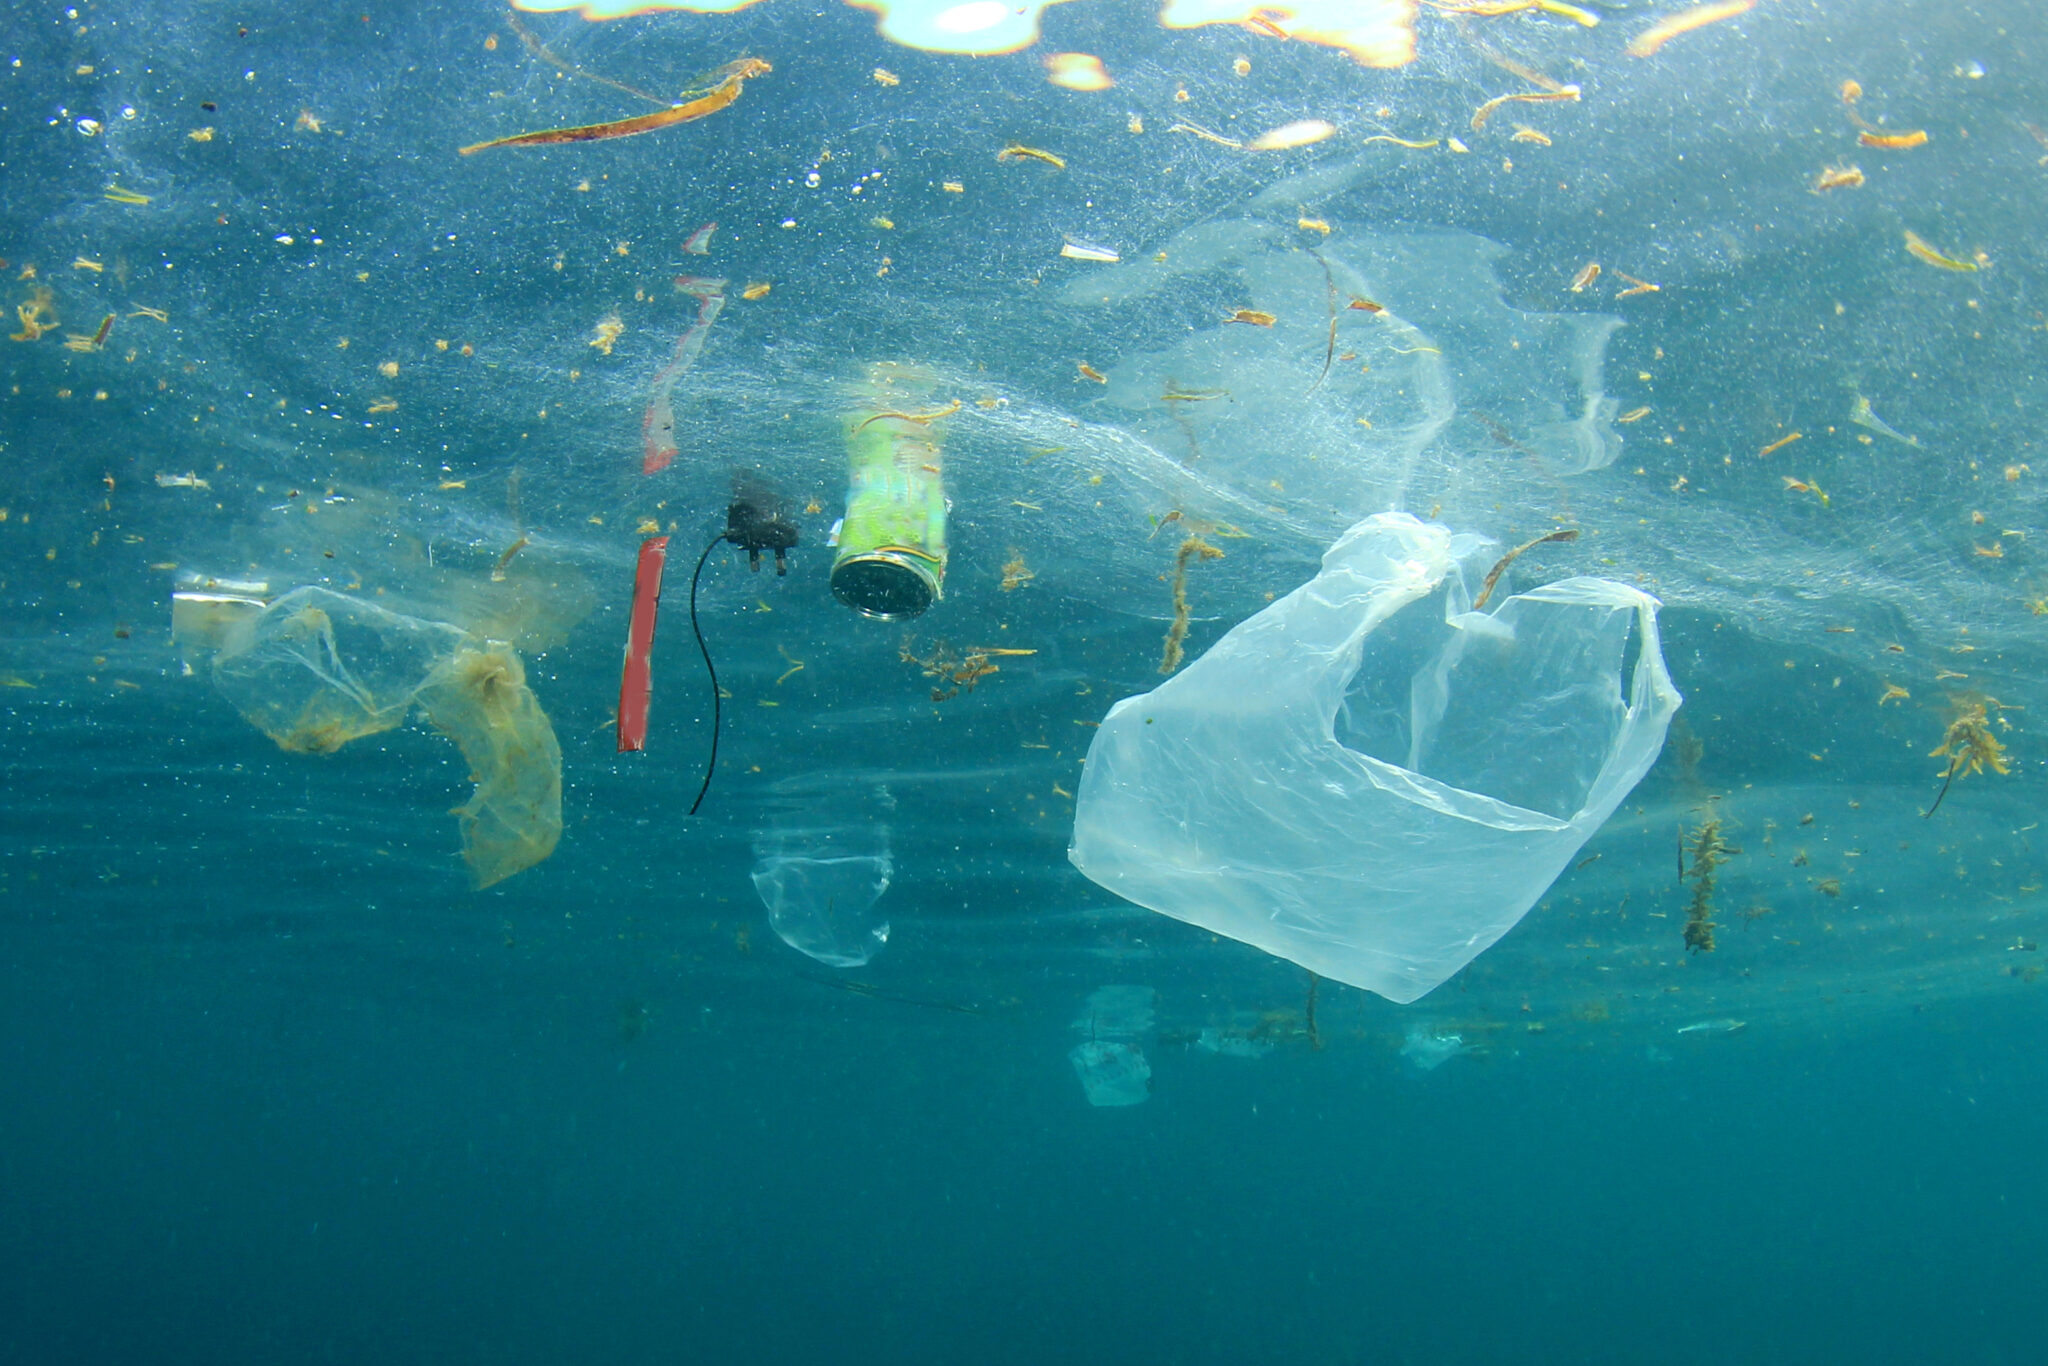 plastic debris floats in the ocean